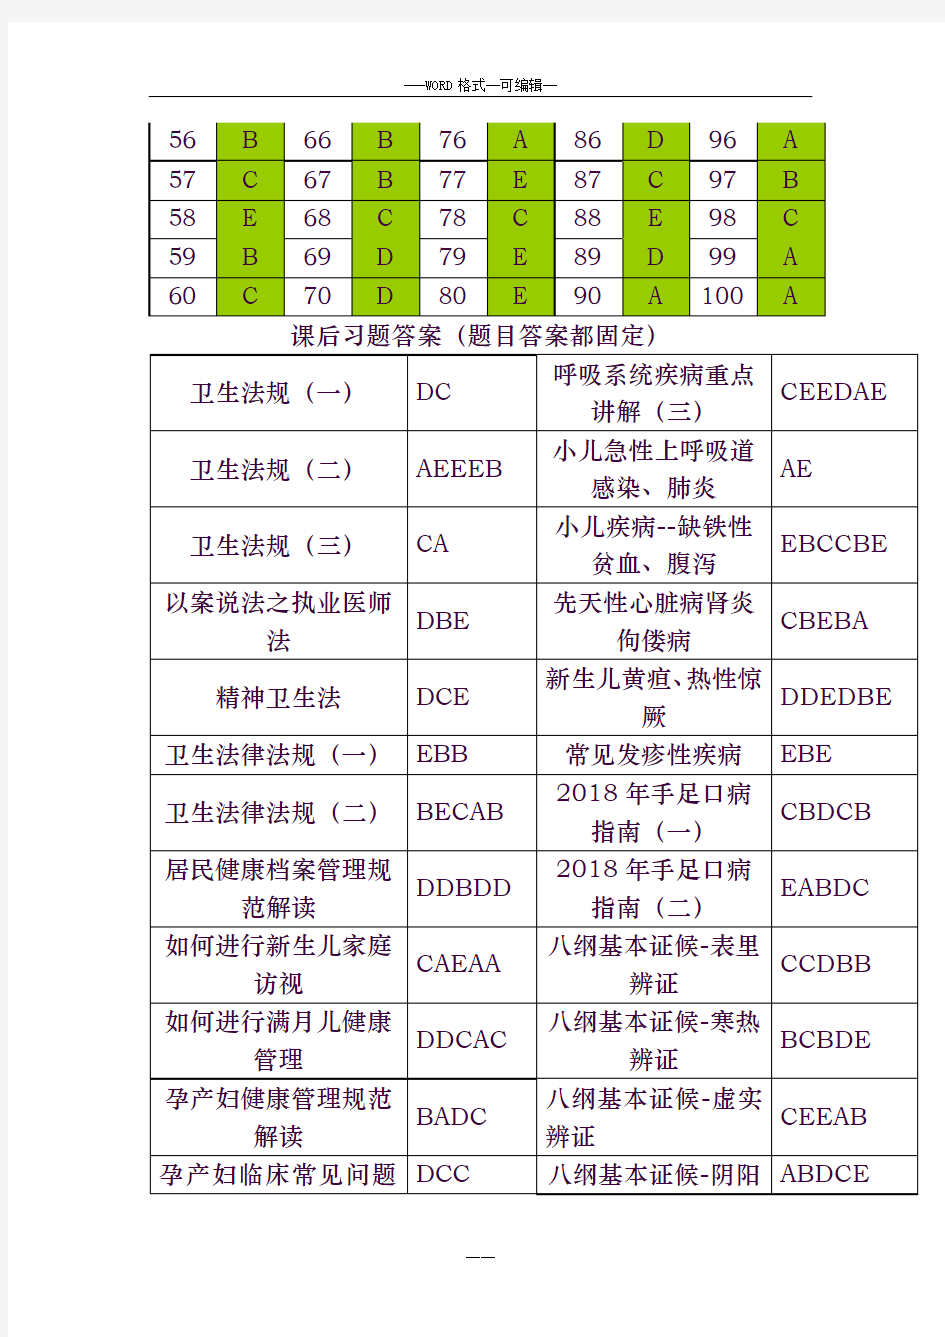 2019年福建省乡村医生规范培训理论考试和课后习题材料更新版58984